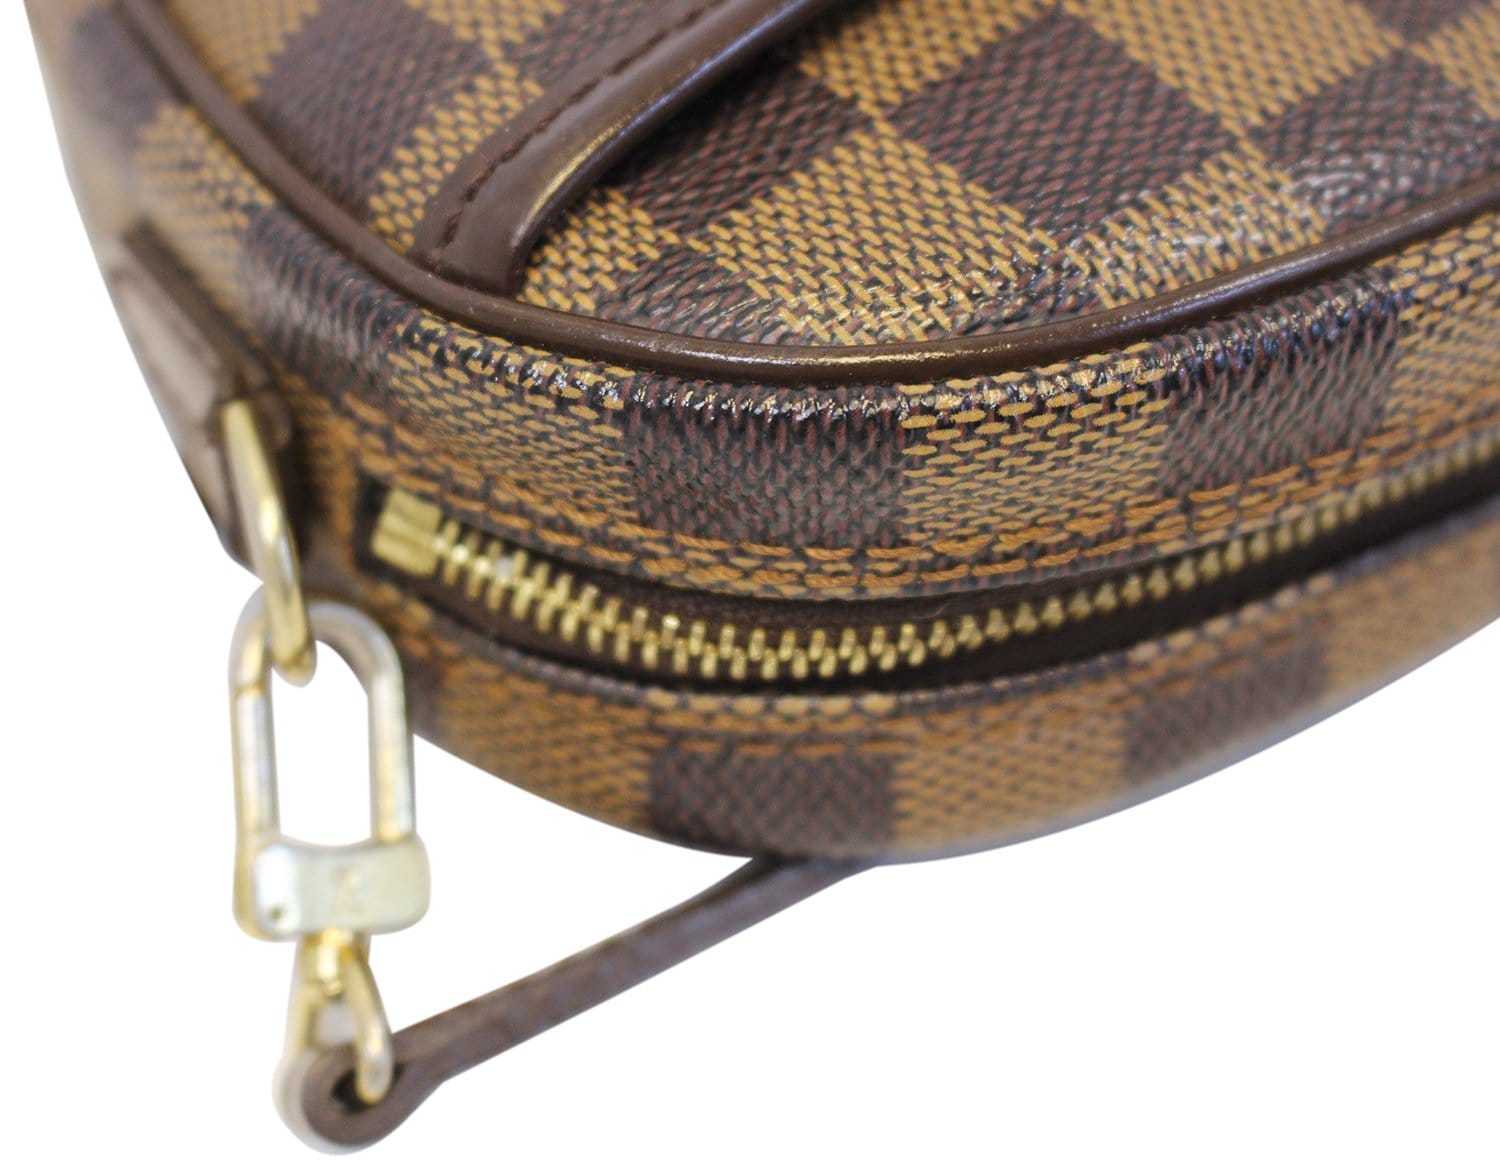 LOUIS VUITTON Pochette Ipanema Mini Shoulder Bag Damier Leather N51296 JP